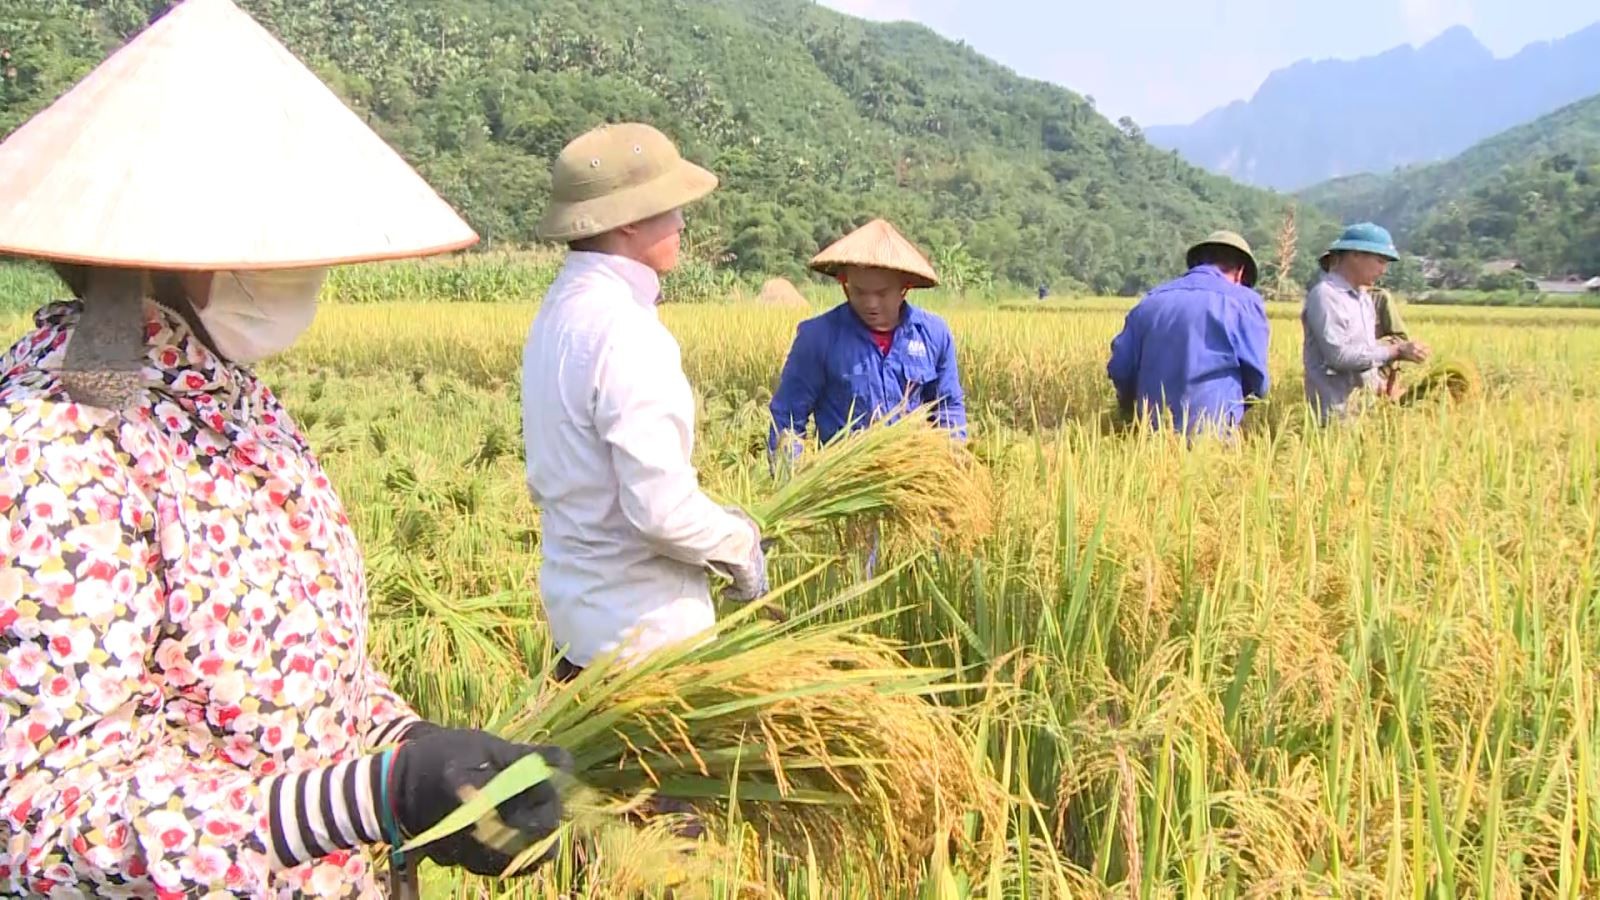 Cơ hội xuất khẩu gạo của Việt Nam từ nay đến cuối năm còn rất lớn